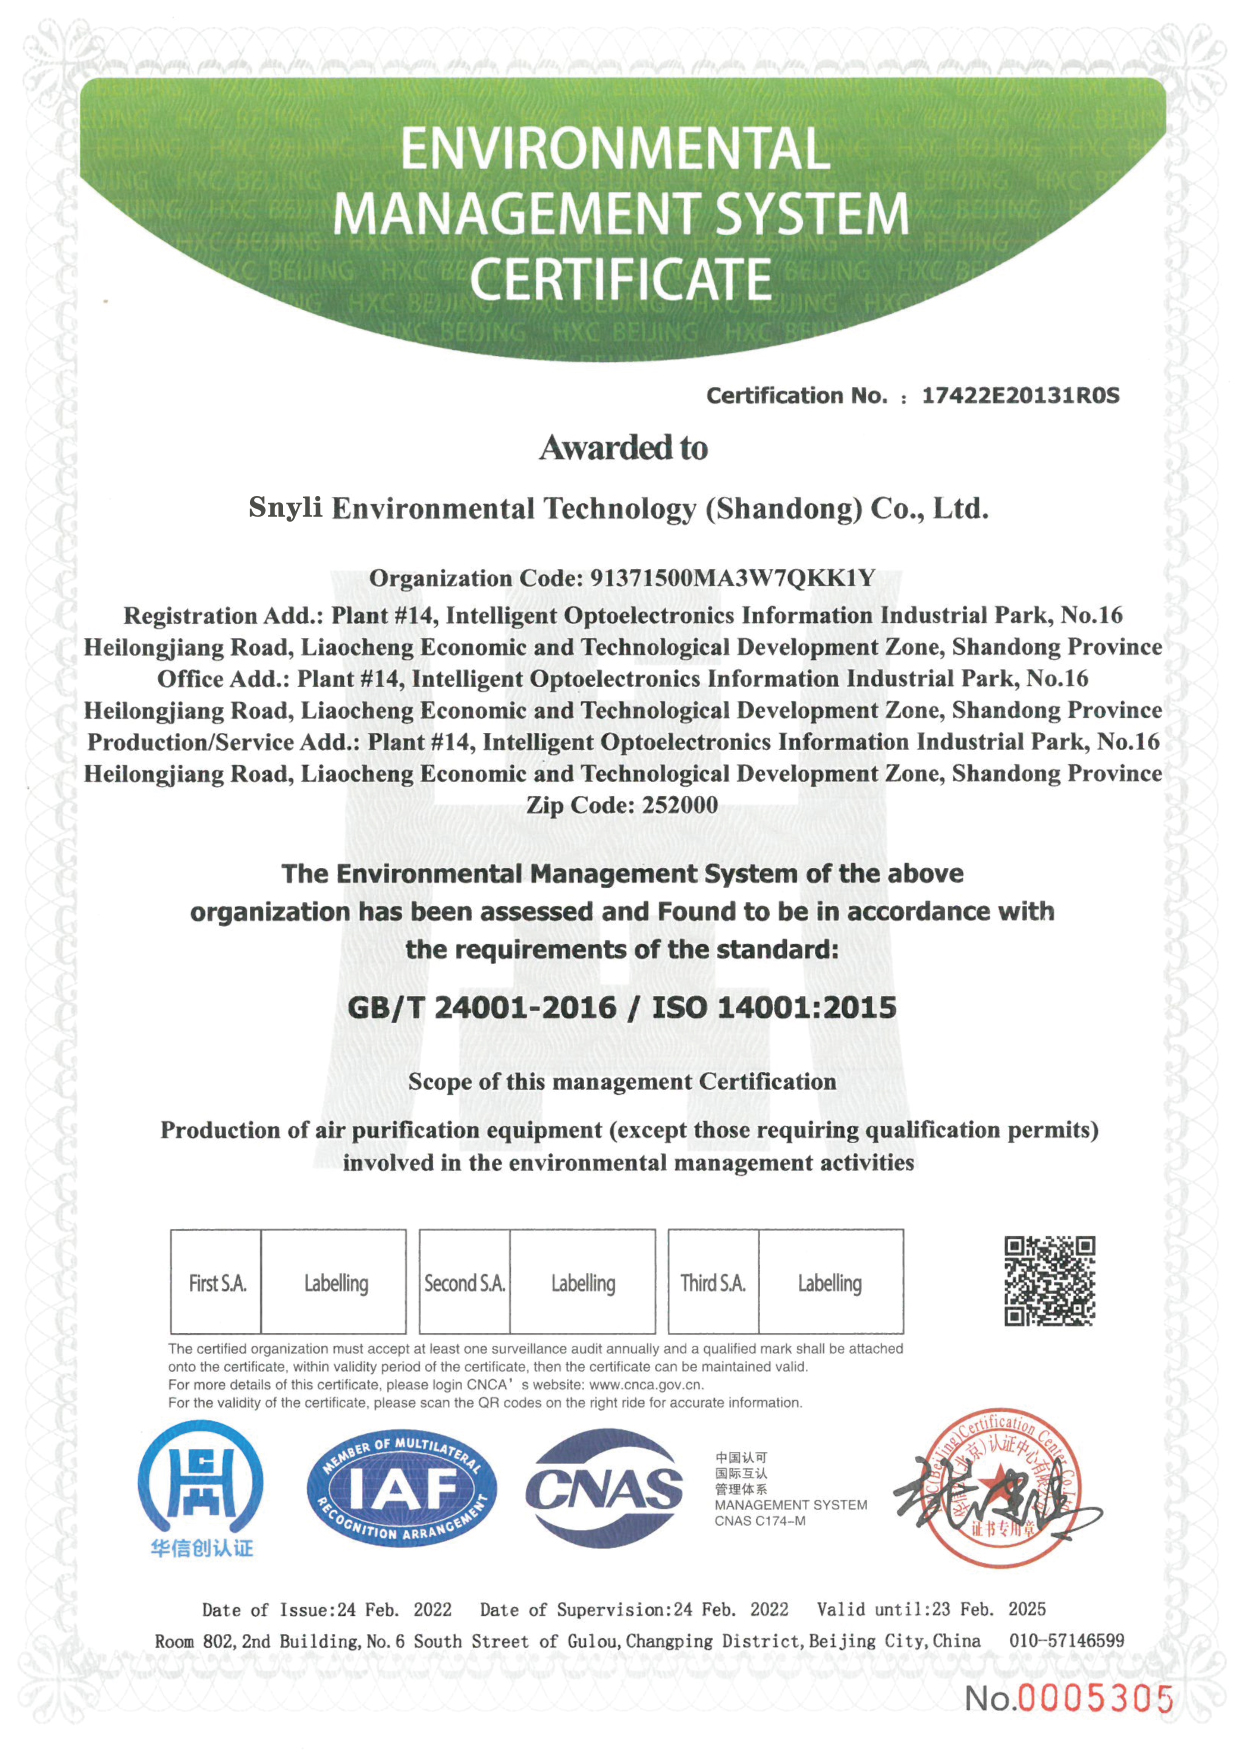 新力环境三体系认证英文版0331-02